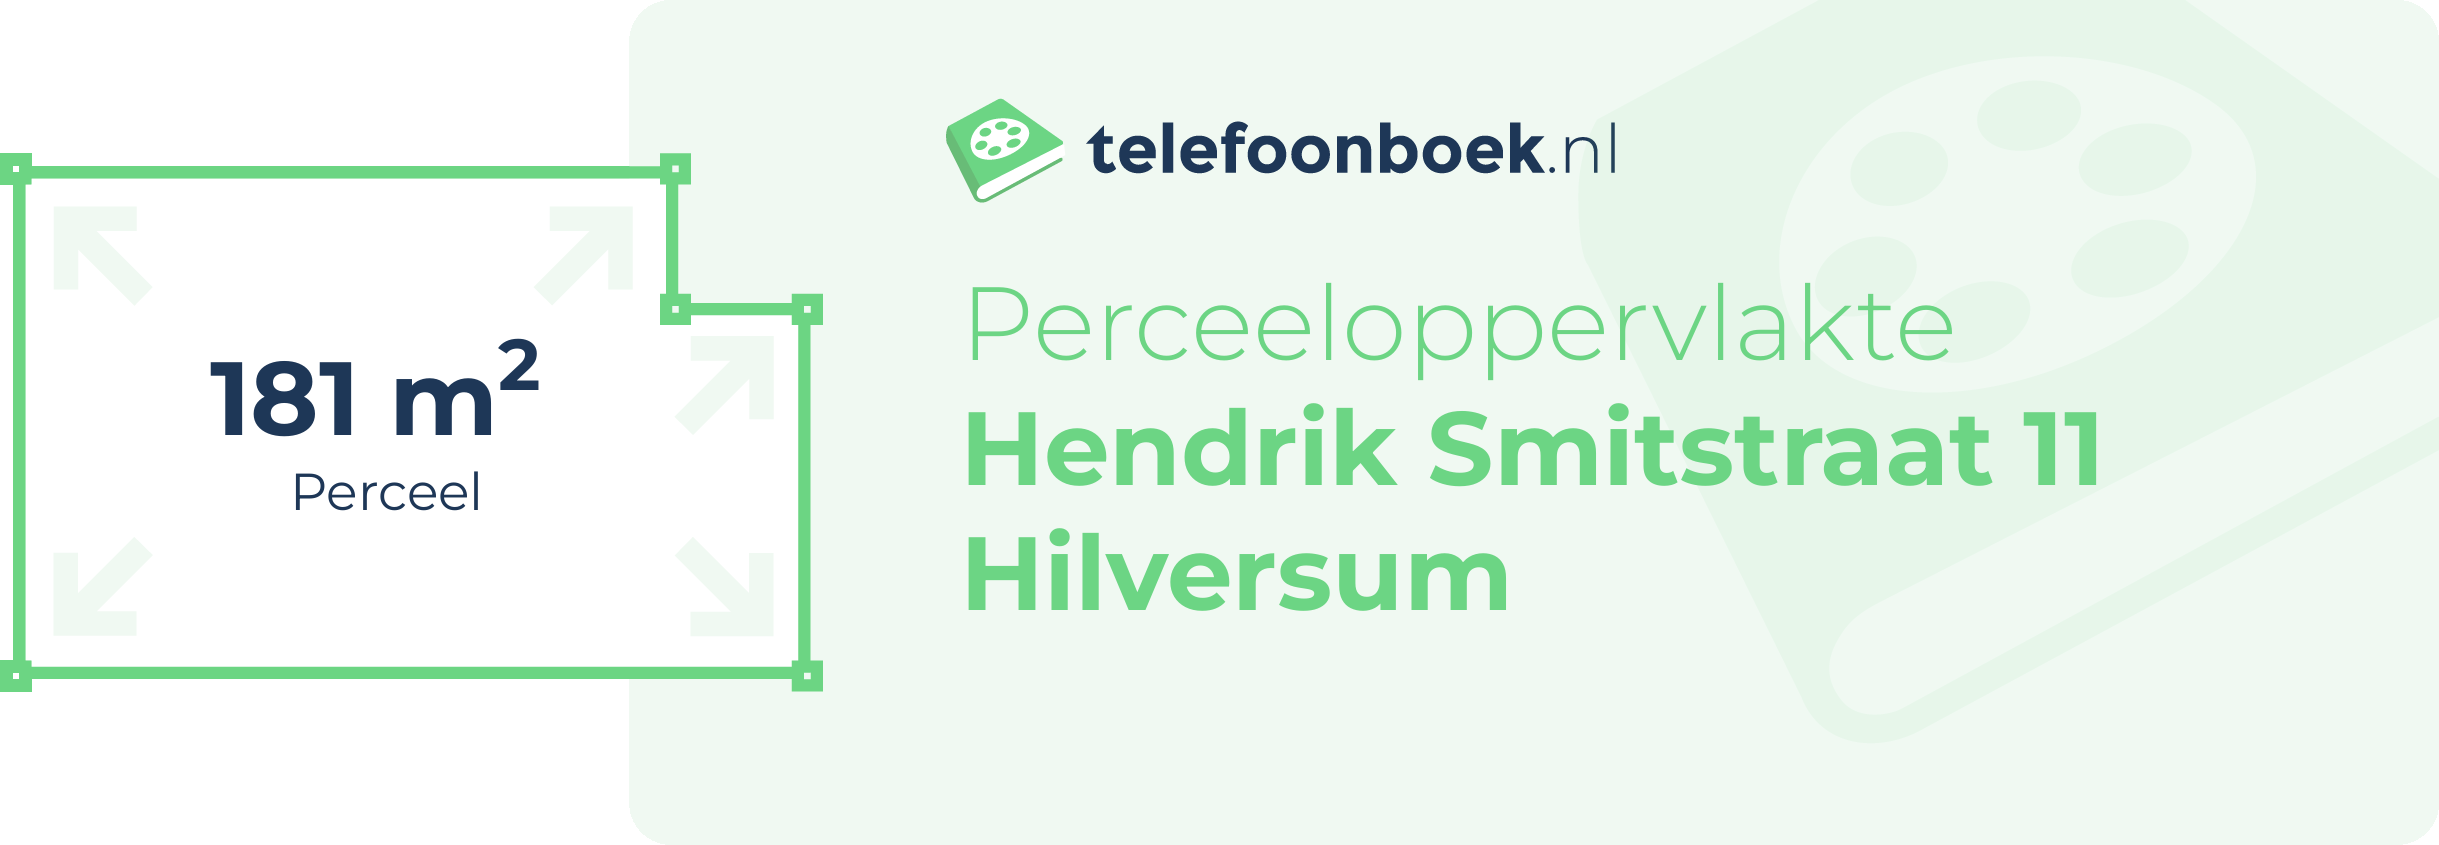 Perceeloppervlakte Hendrik Smitstraat 11 Hilversum